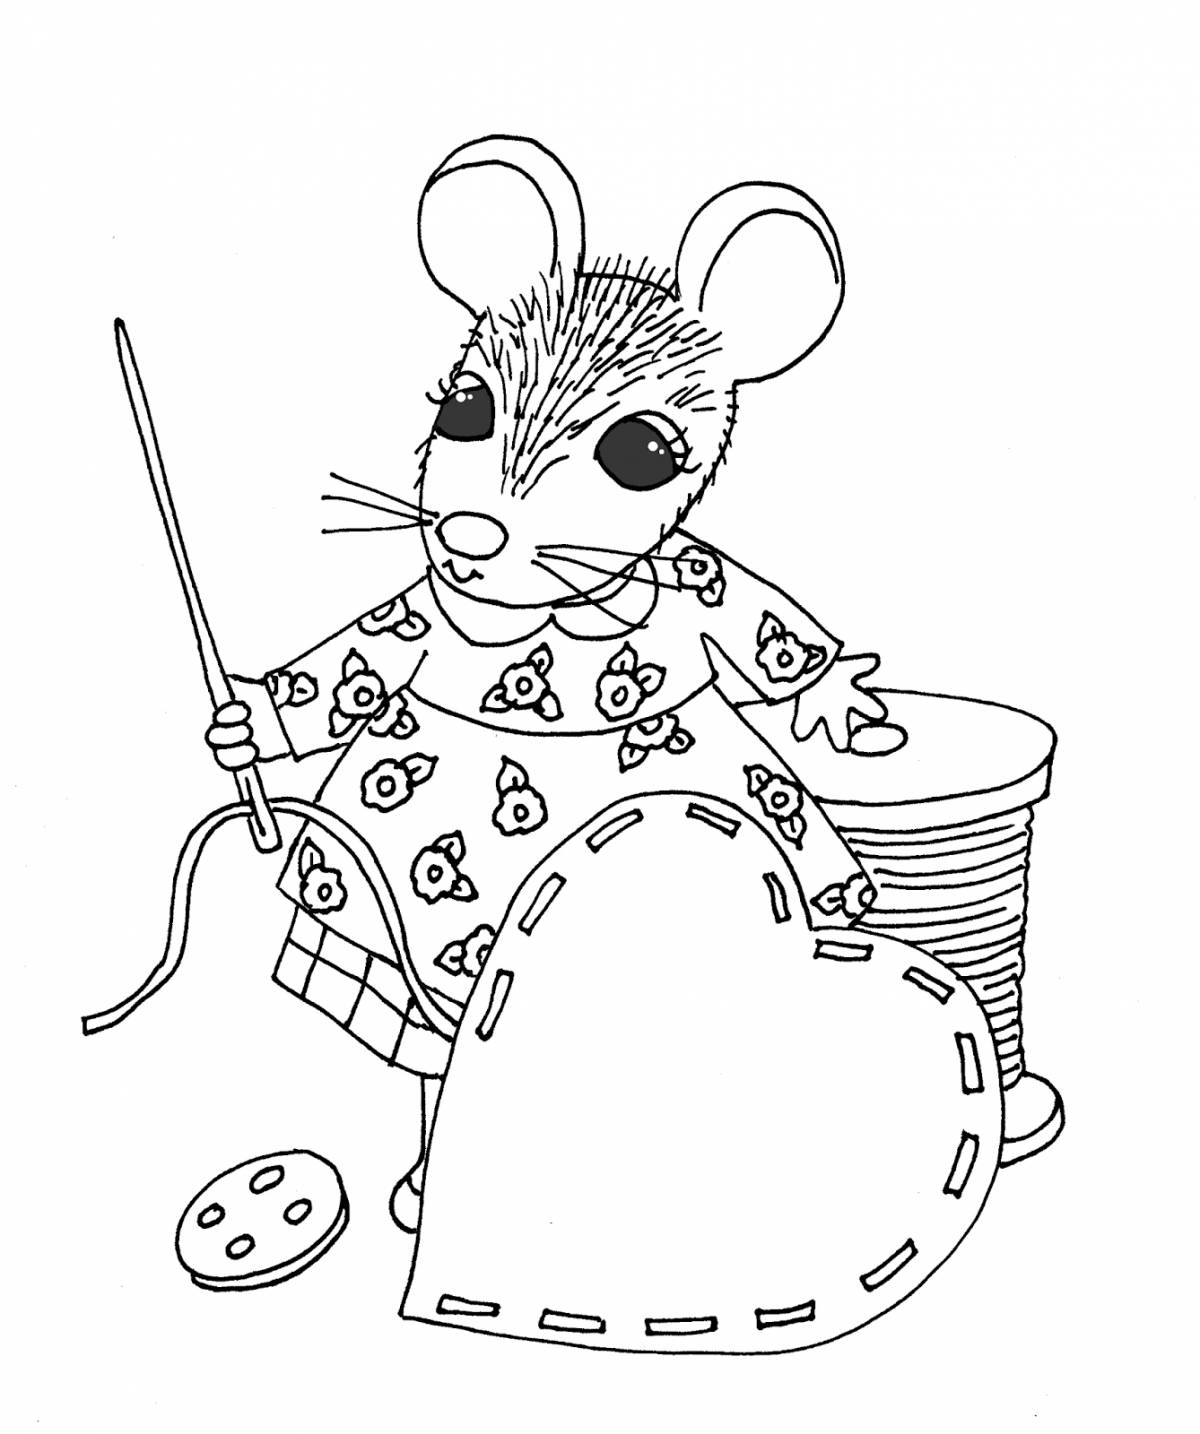 Великолепная раскраска глупого мышонка